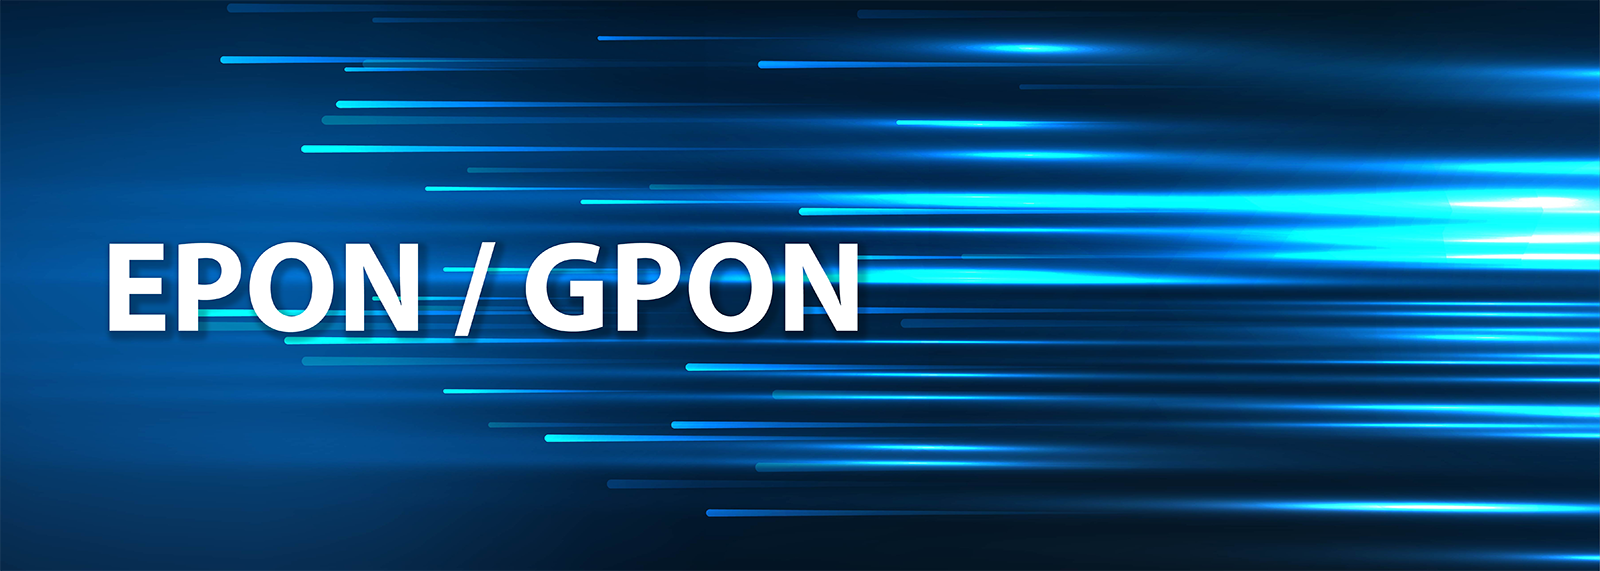 EPON และ GPON คืออะไร มีความแตกต่างกันอย่างไร